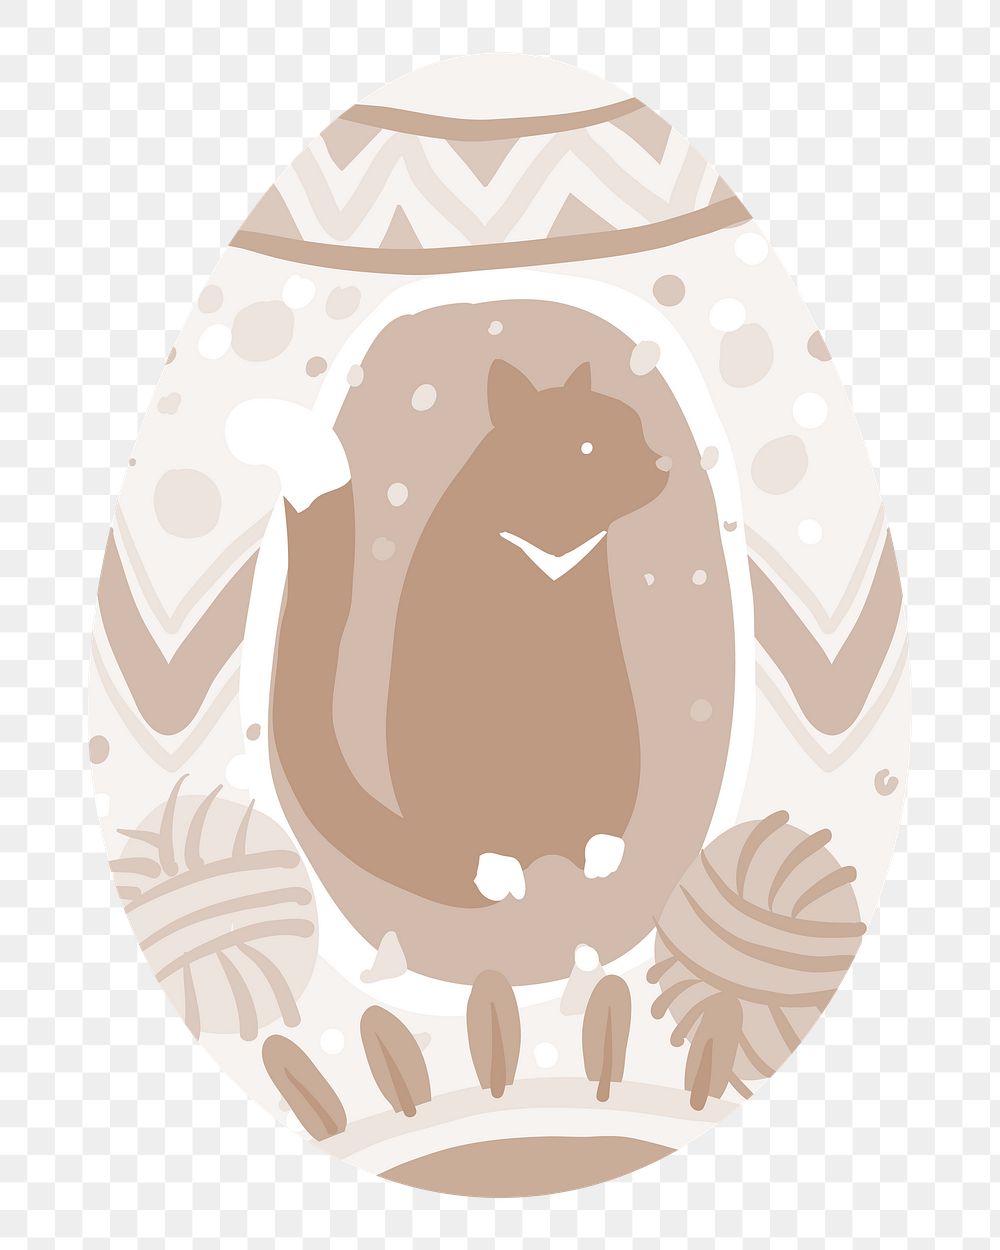 Png brown cat easter egg illustration, transparent background